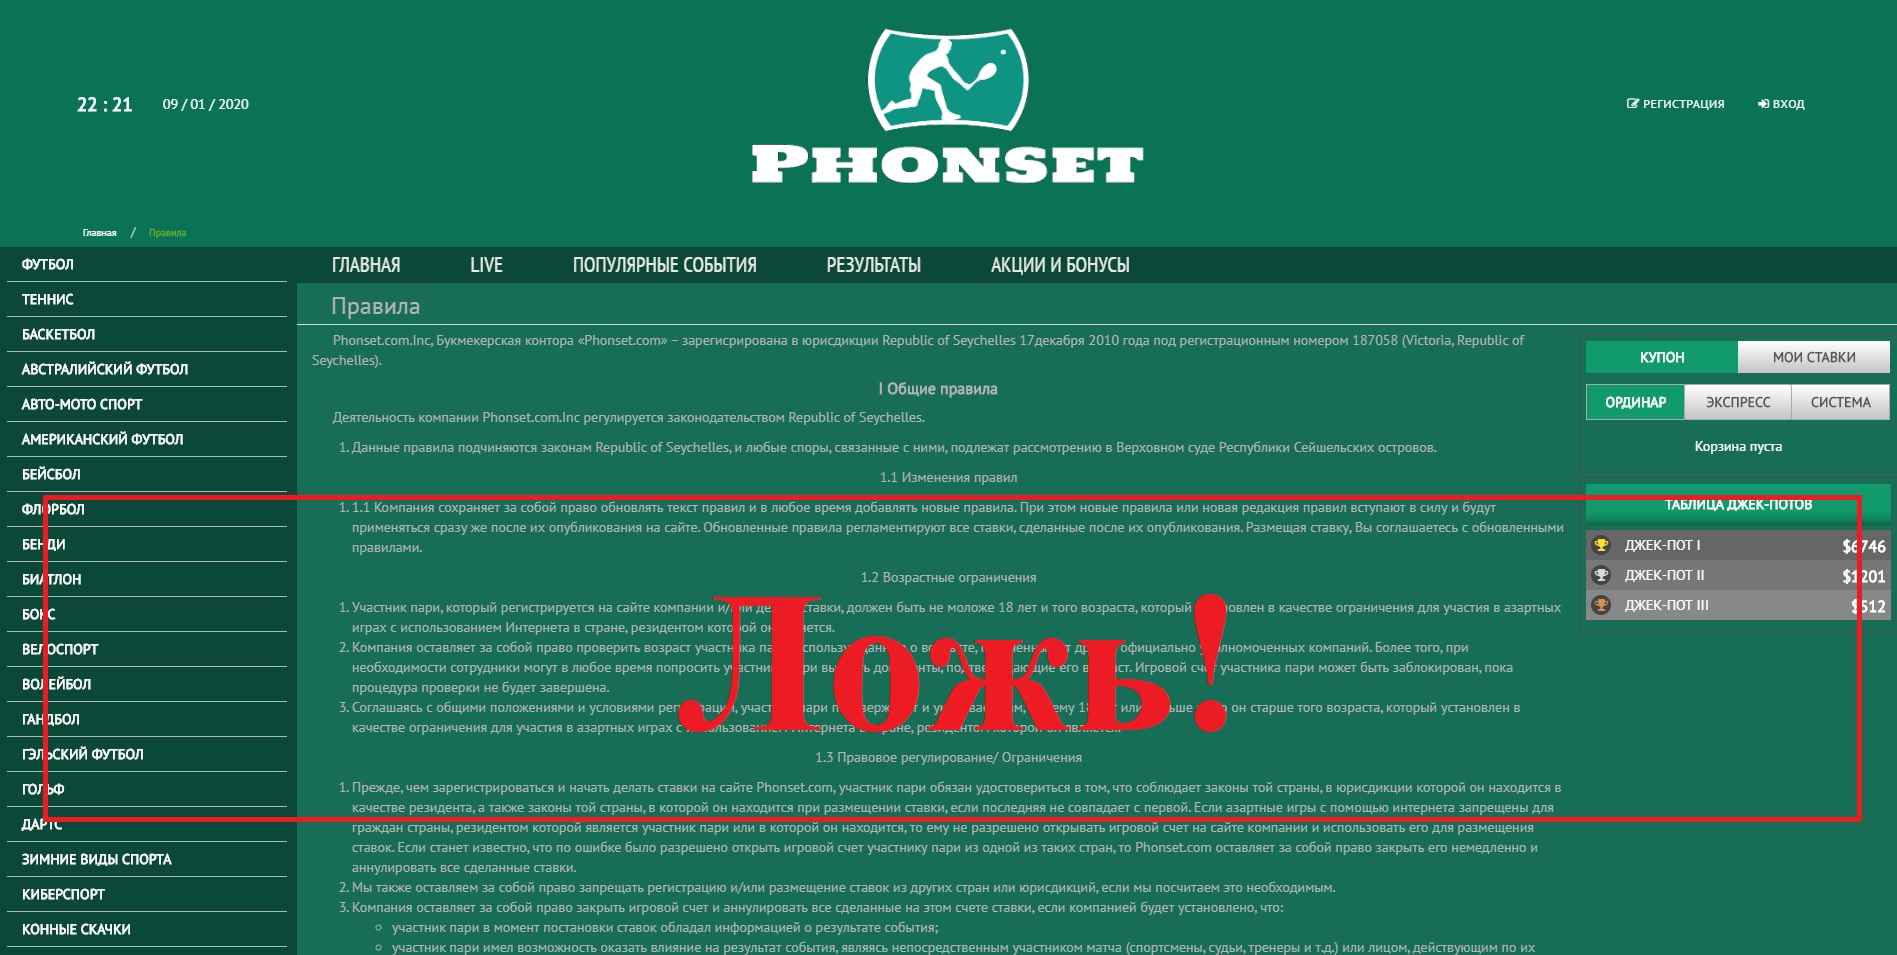 Phonset – букмекерская контора. Отзывы о phonset.com